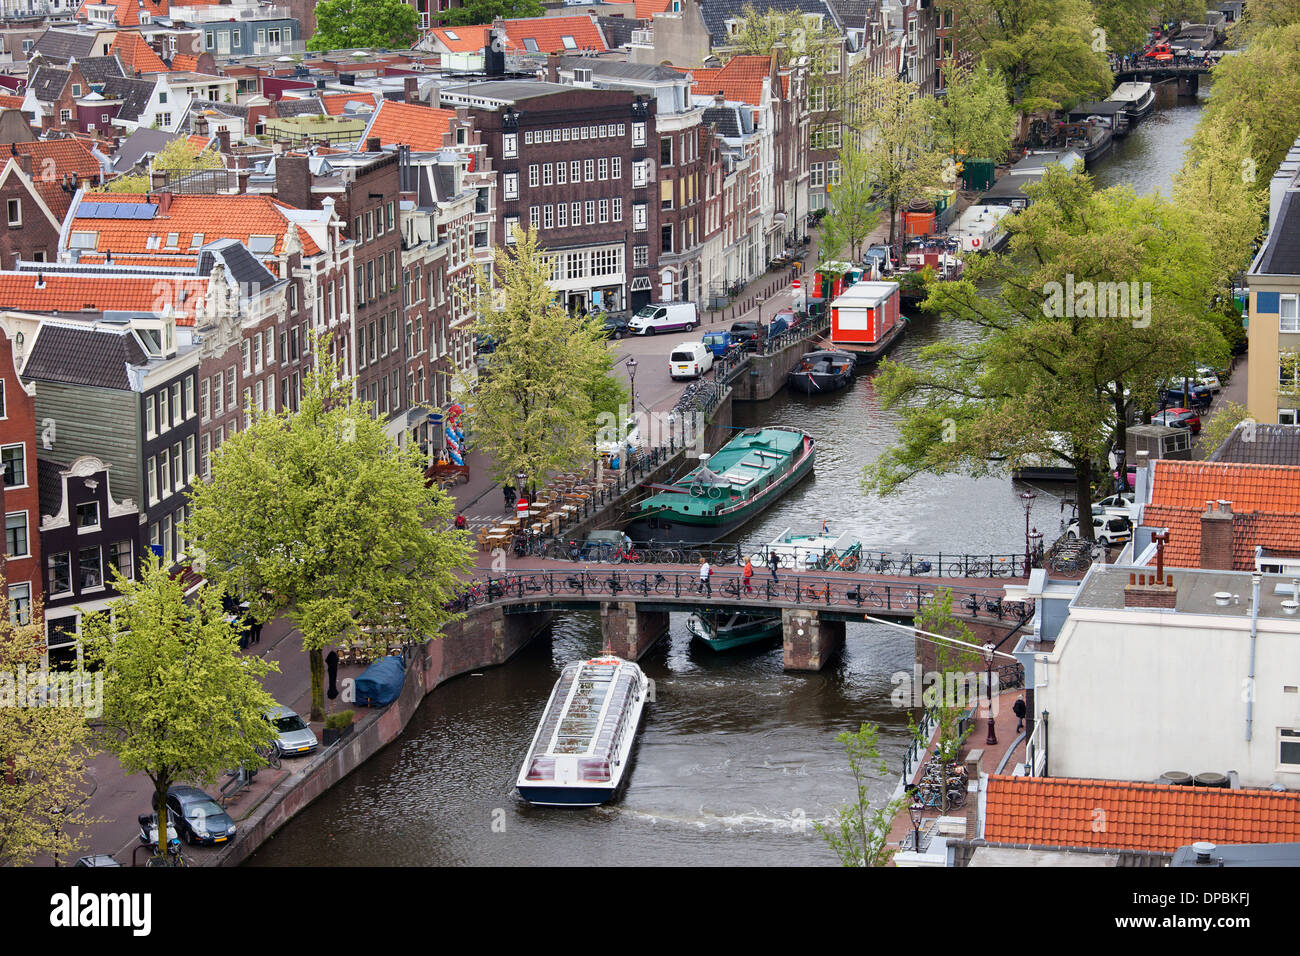 Von oben, Prinsengracht Street und Leliesluis Brücke über den Kanal von Amsterdam  Jordaan-Viertel, Holland, Niederlande Stockfotografie - Alamy